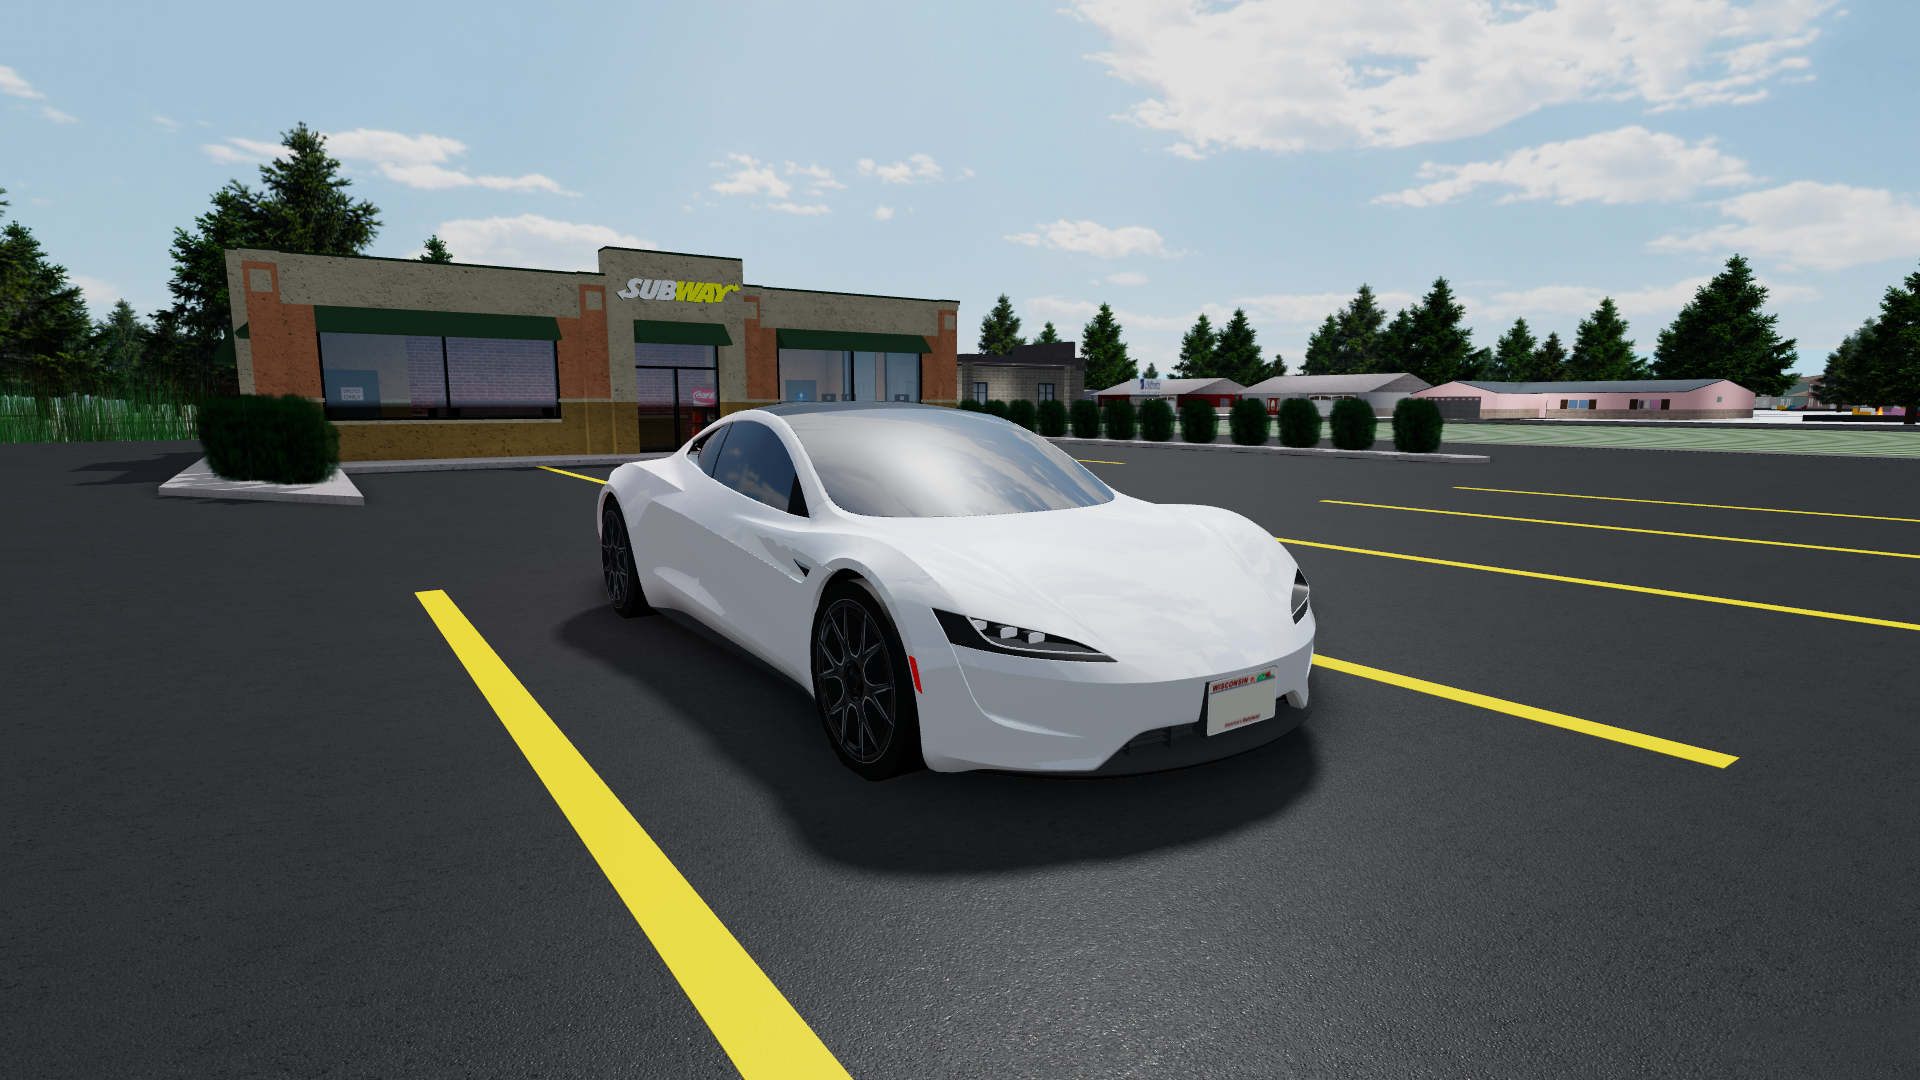 2020 Tesla Roadster Greenville Wisconsin Wiki Fandom - greenville new cars roblox 2019